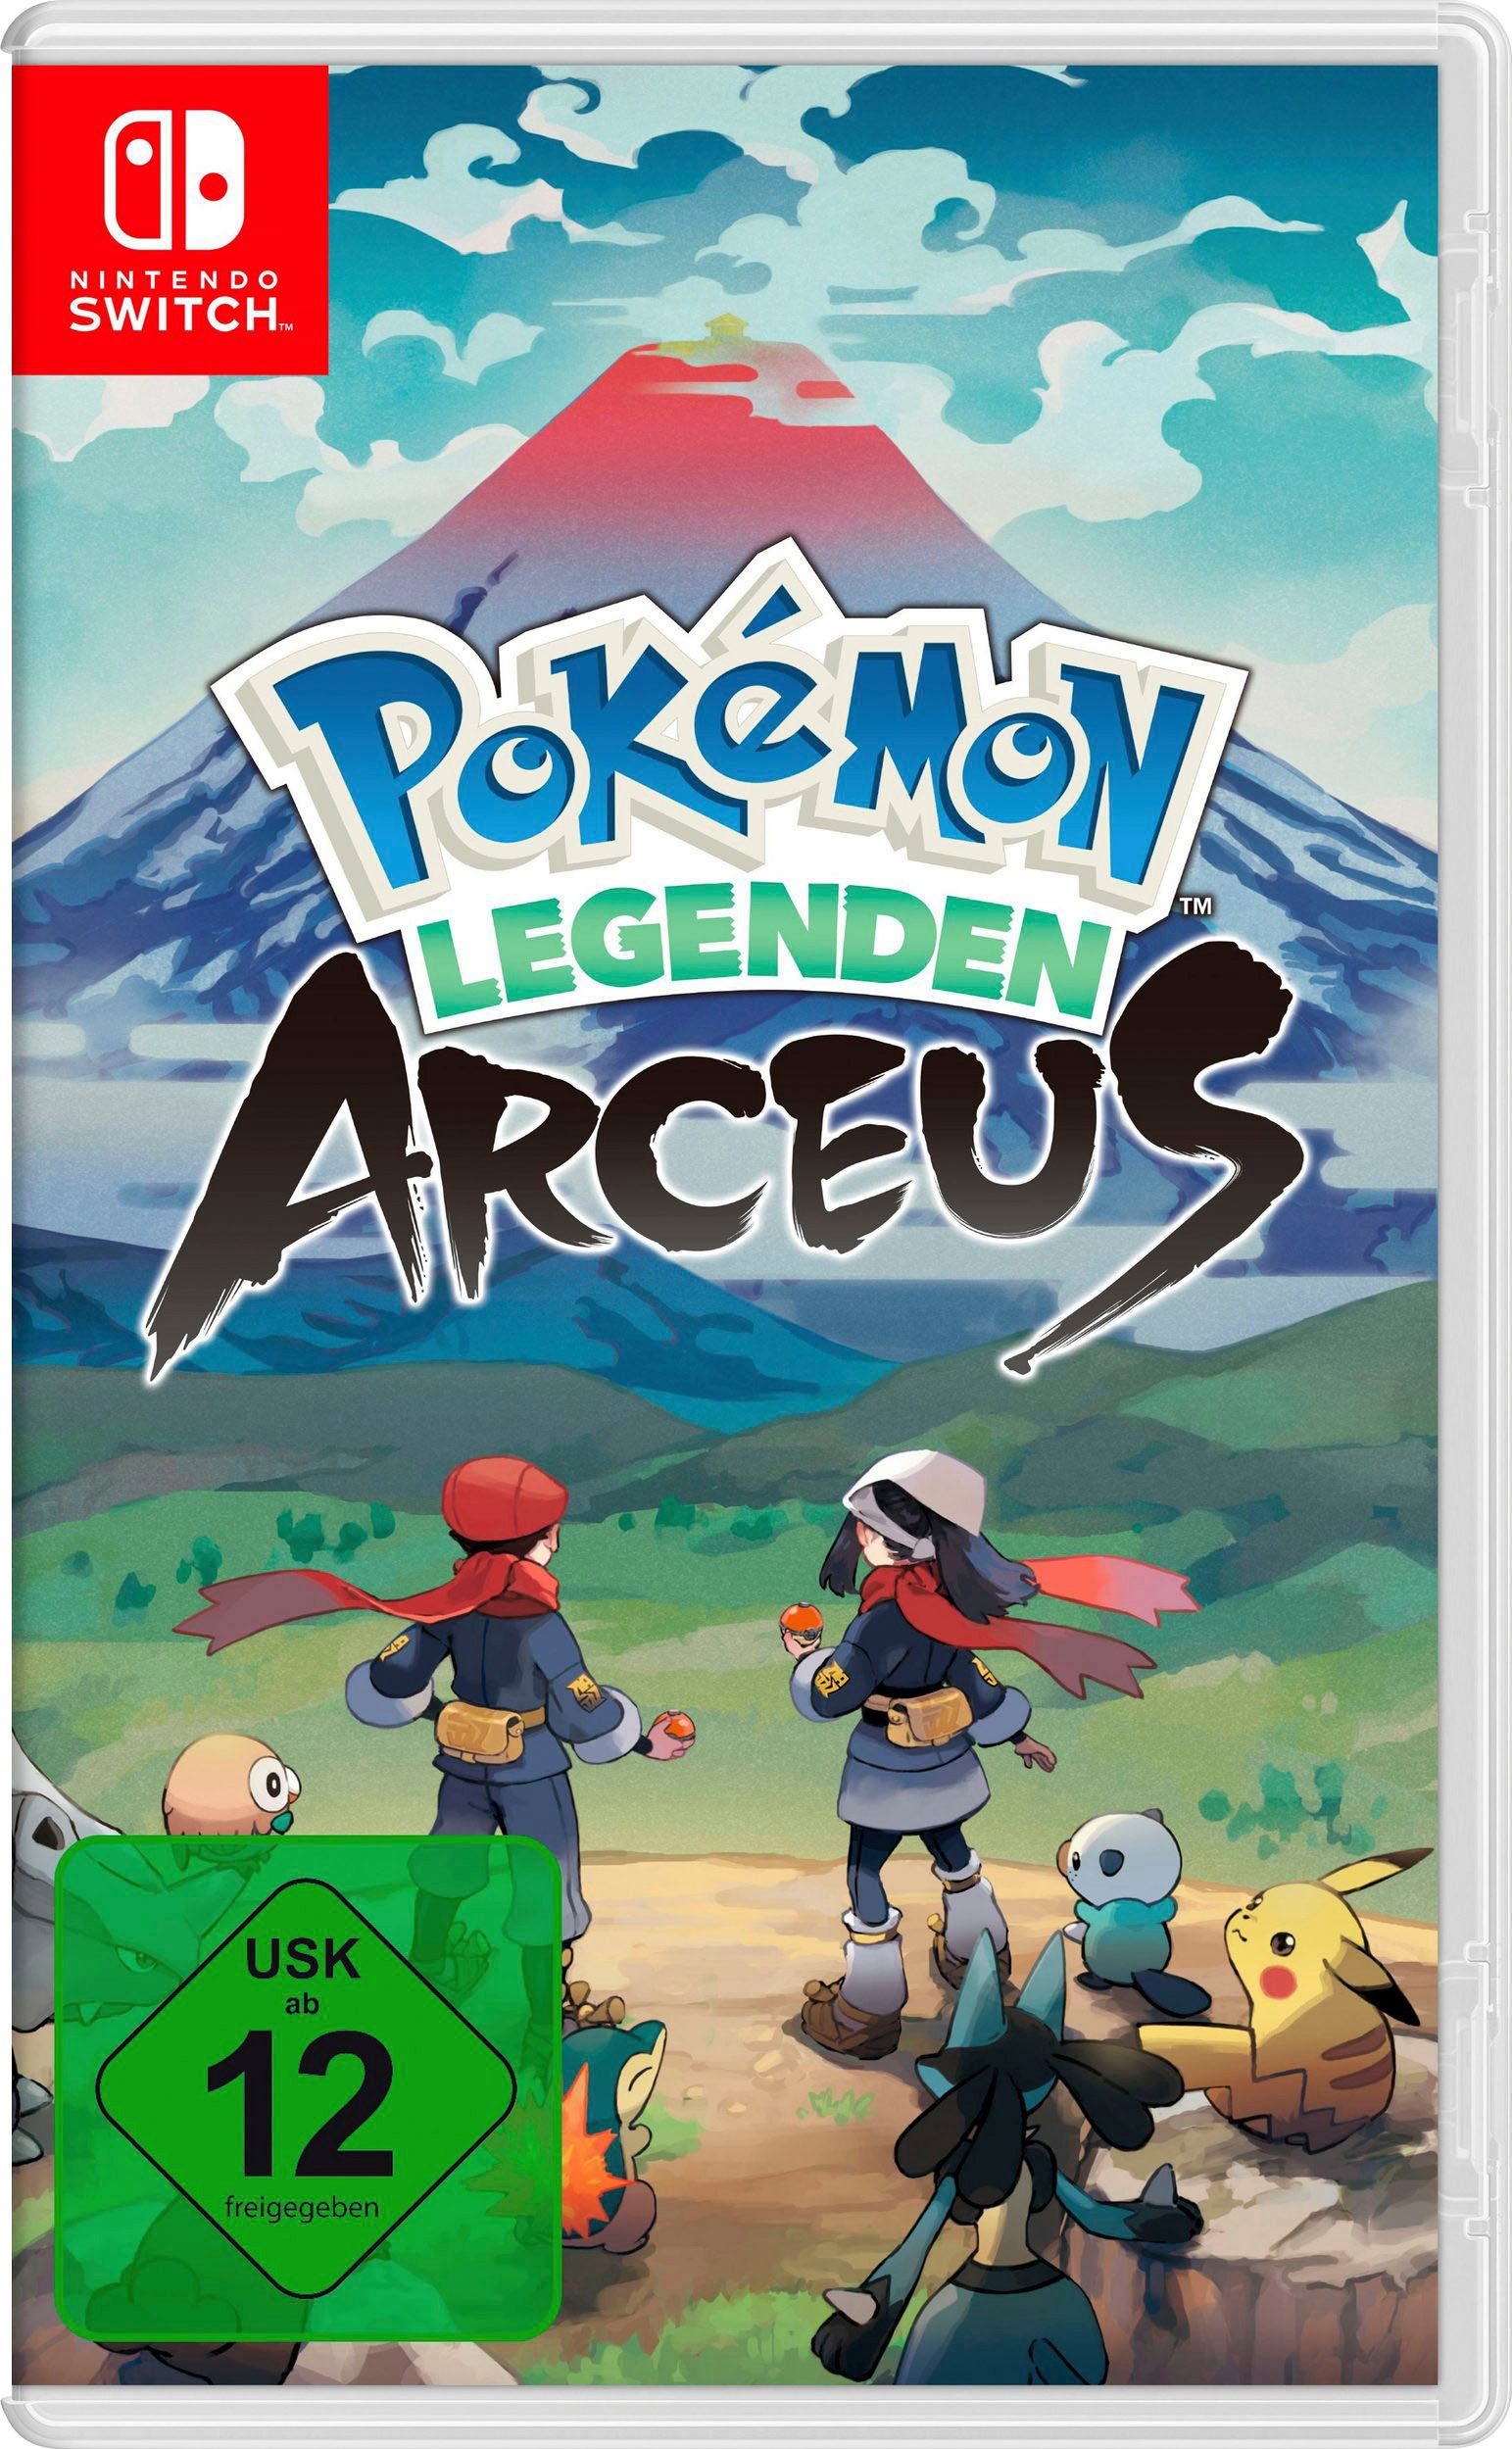 Pokémon inkl. Nintendo OLED-Modell, Arceus Legenden Switch,